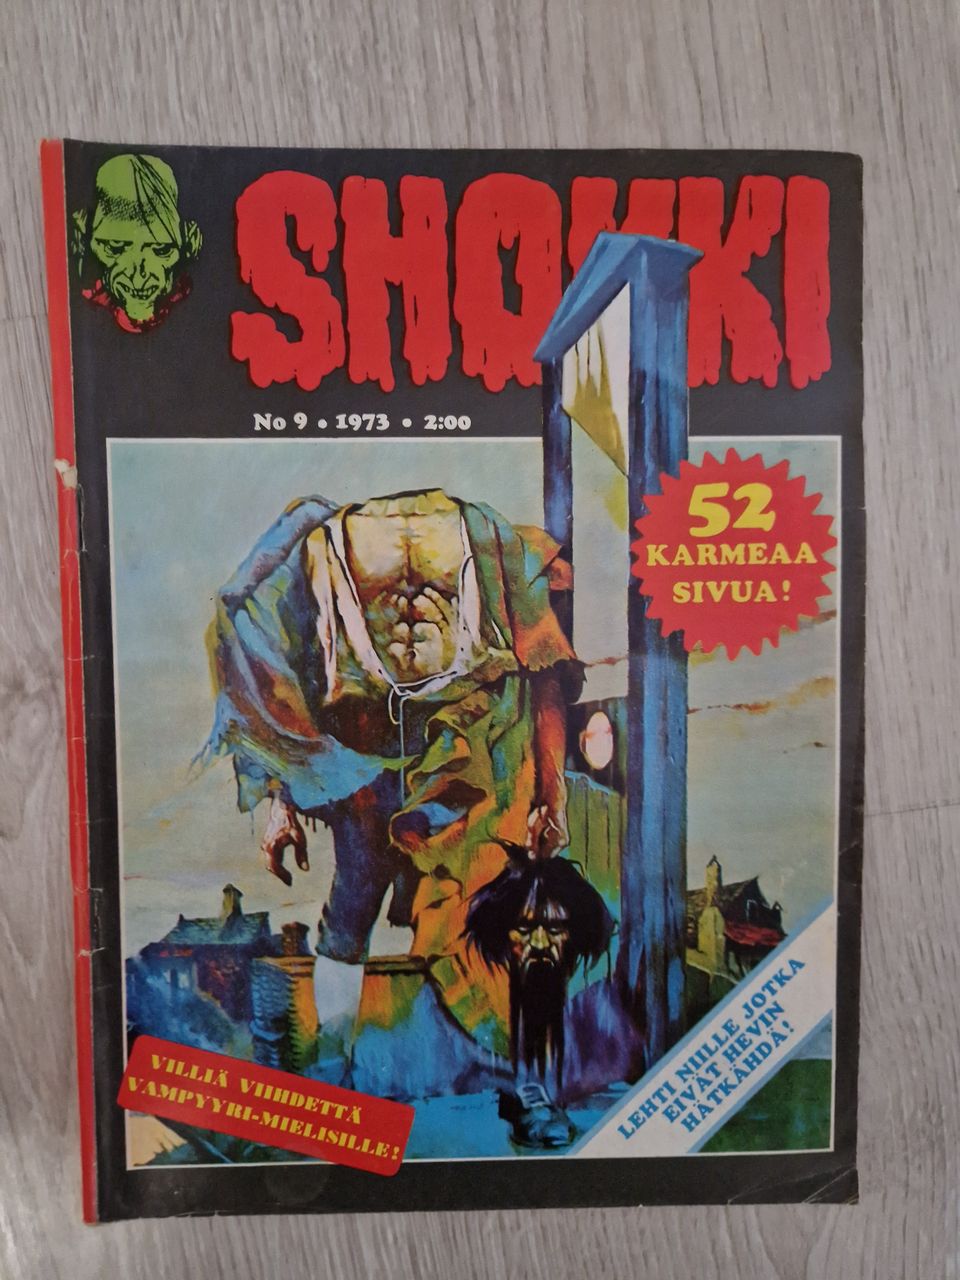 Shokki 9 / 1973